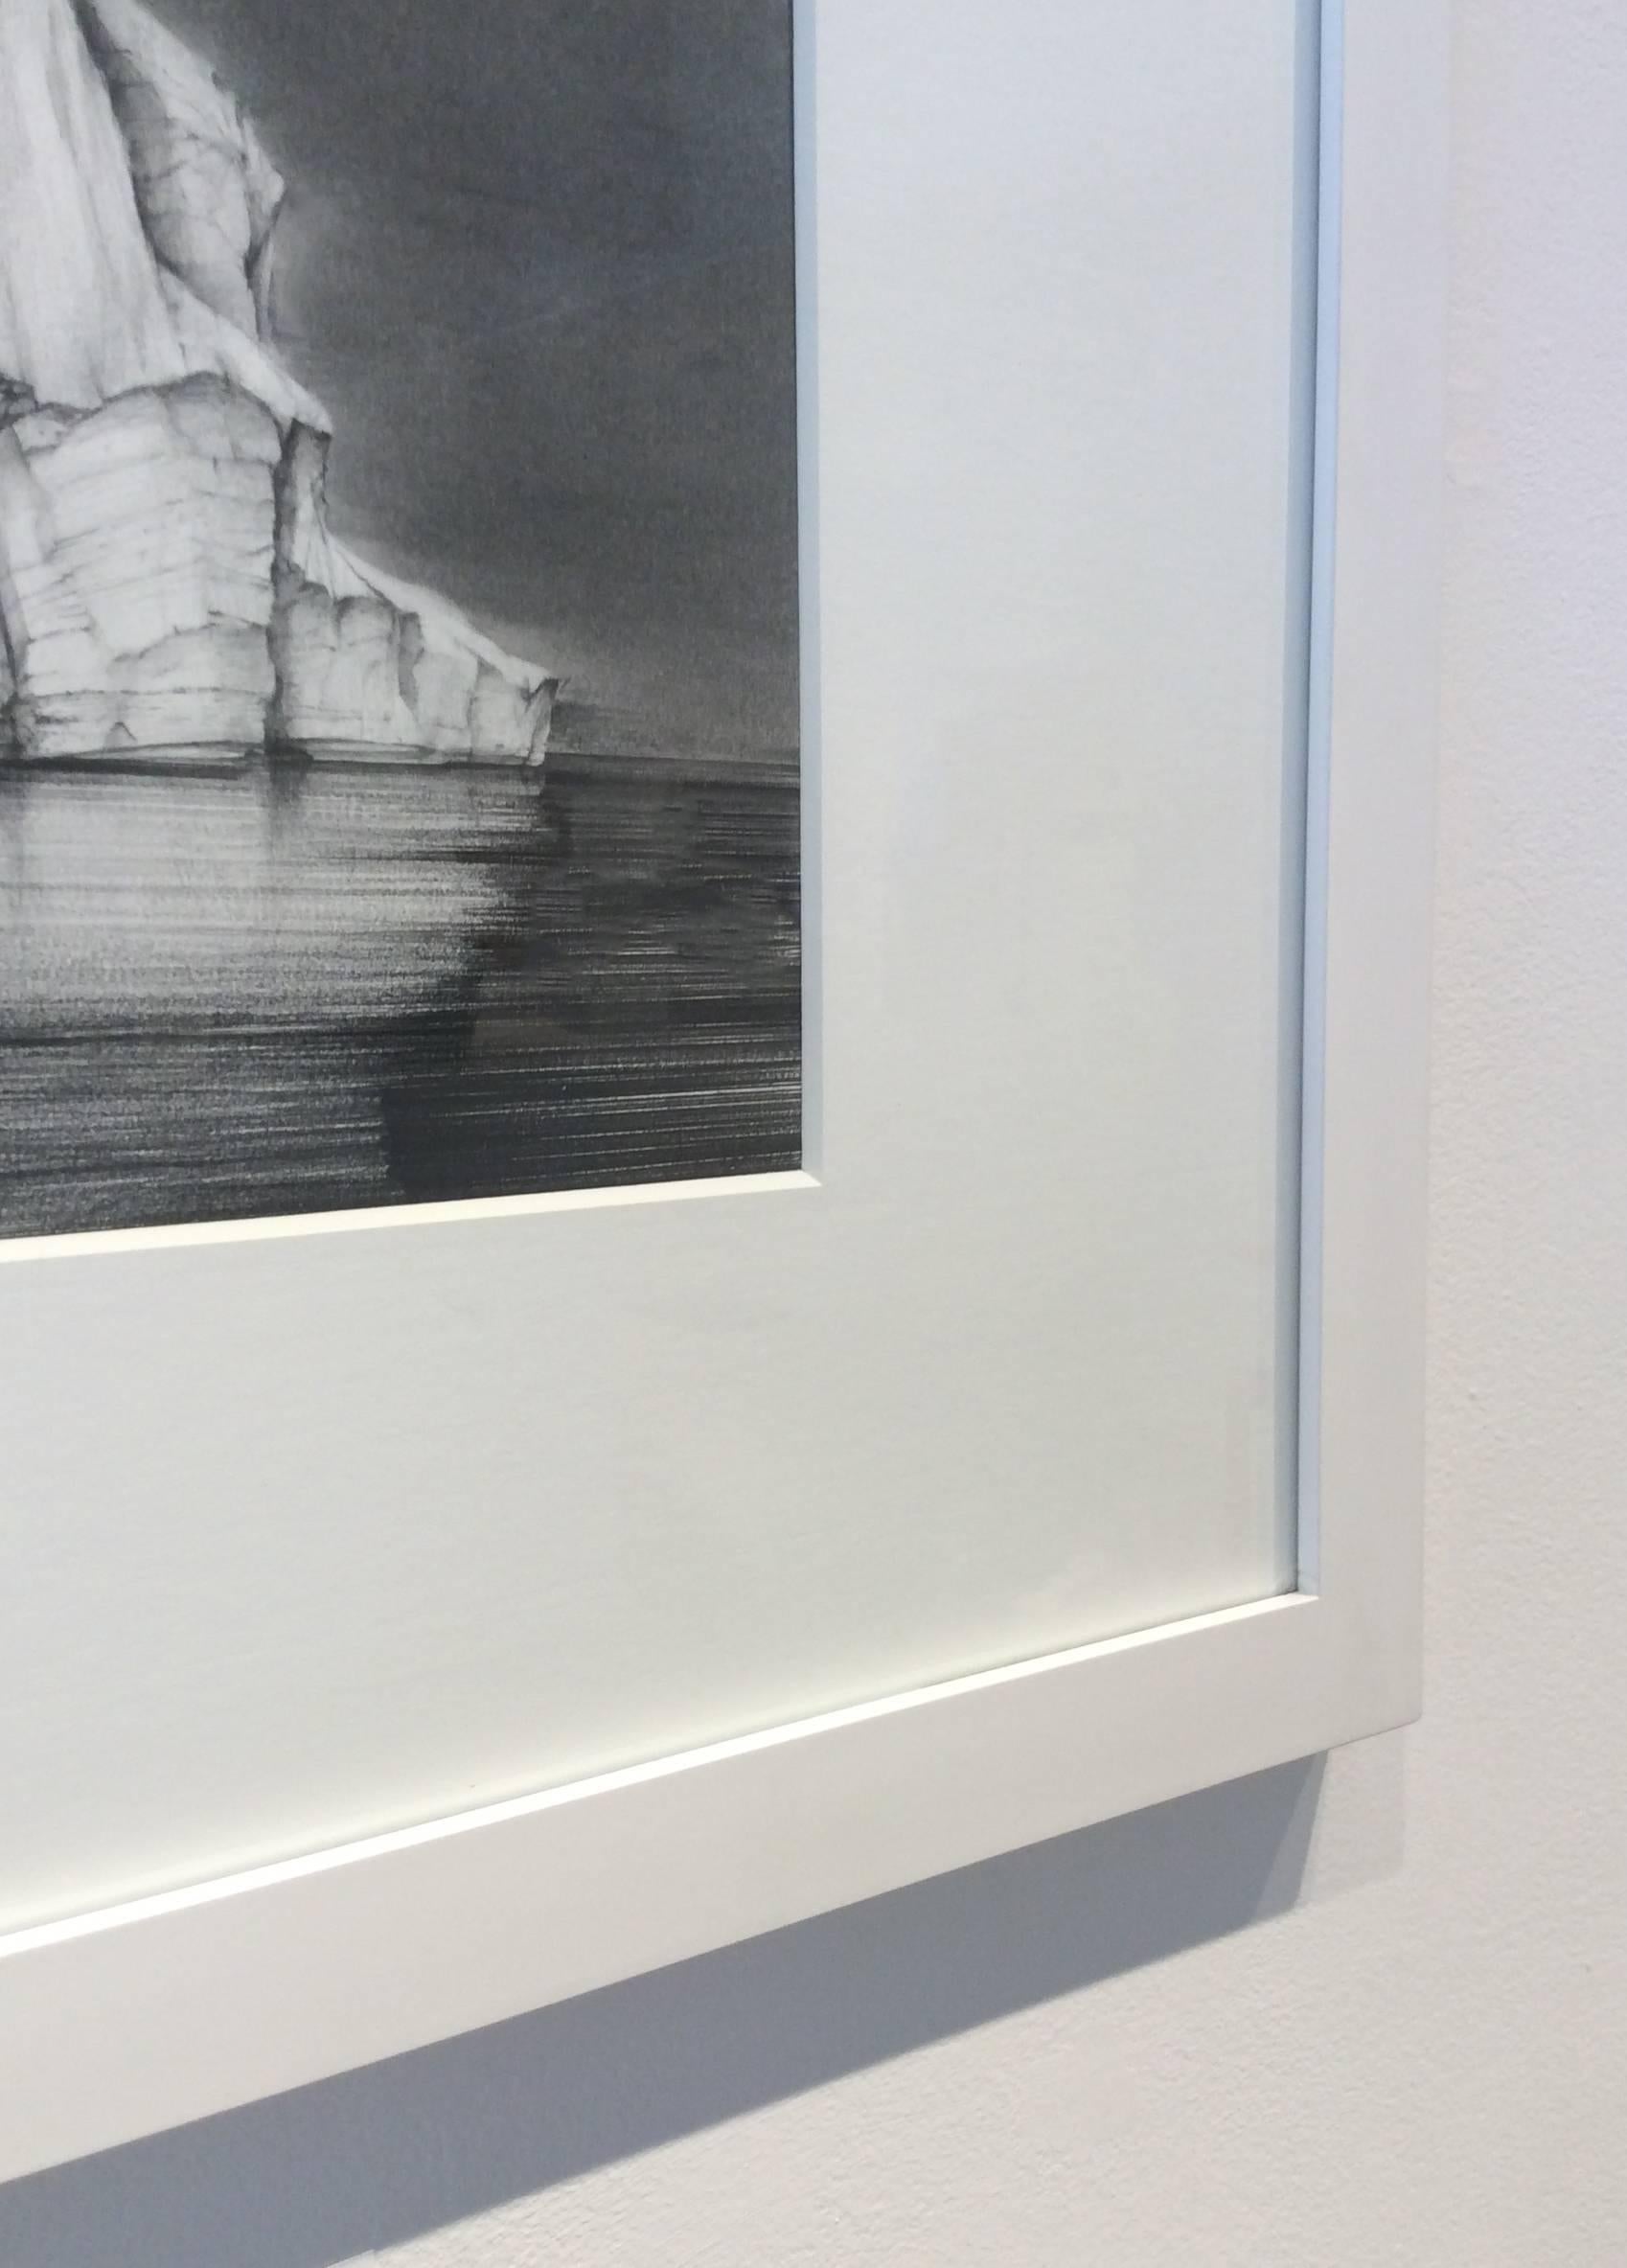 Dessin de Iceberg 3 : Dessin de paysage en noir et blanc représentant un iceberg dans l'eau, encadré - Noir Landscape Art par Juan Garcia-Nunez